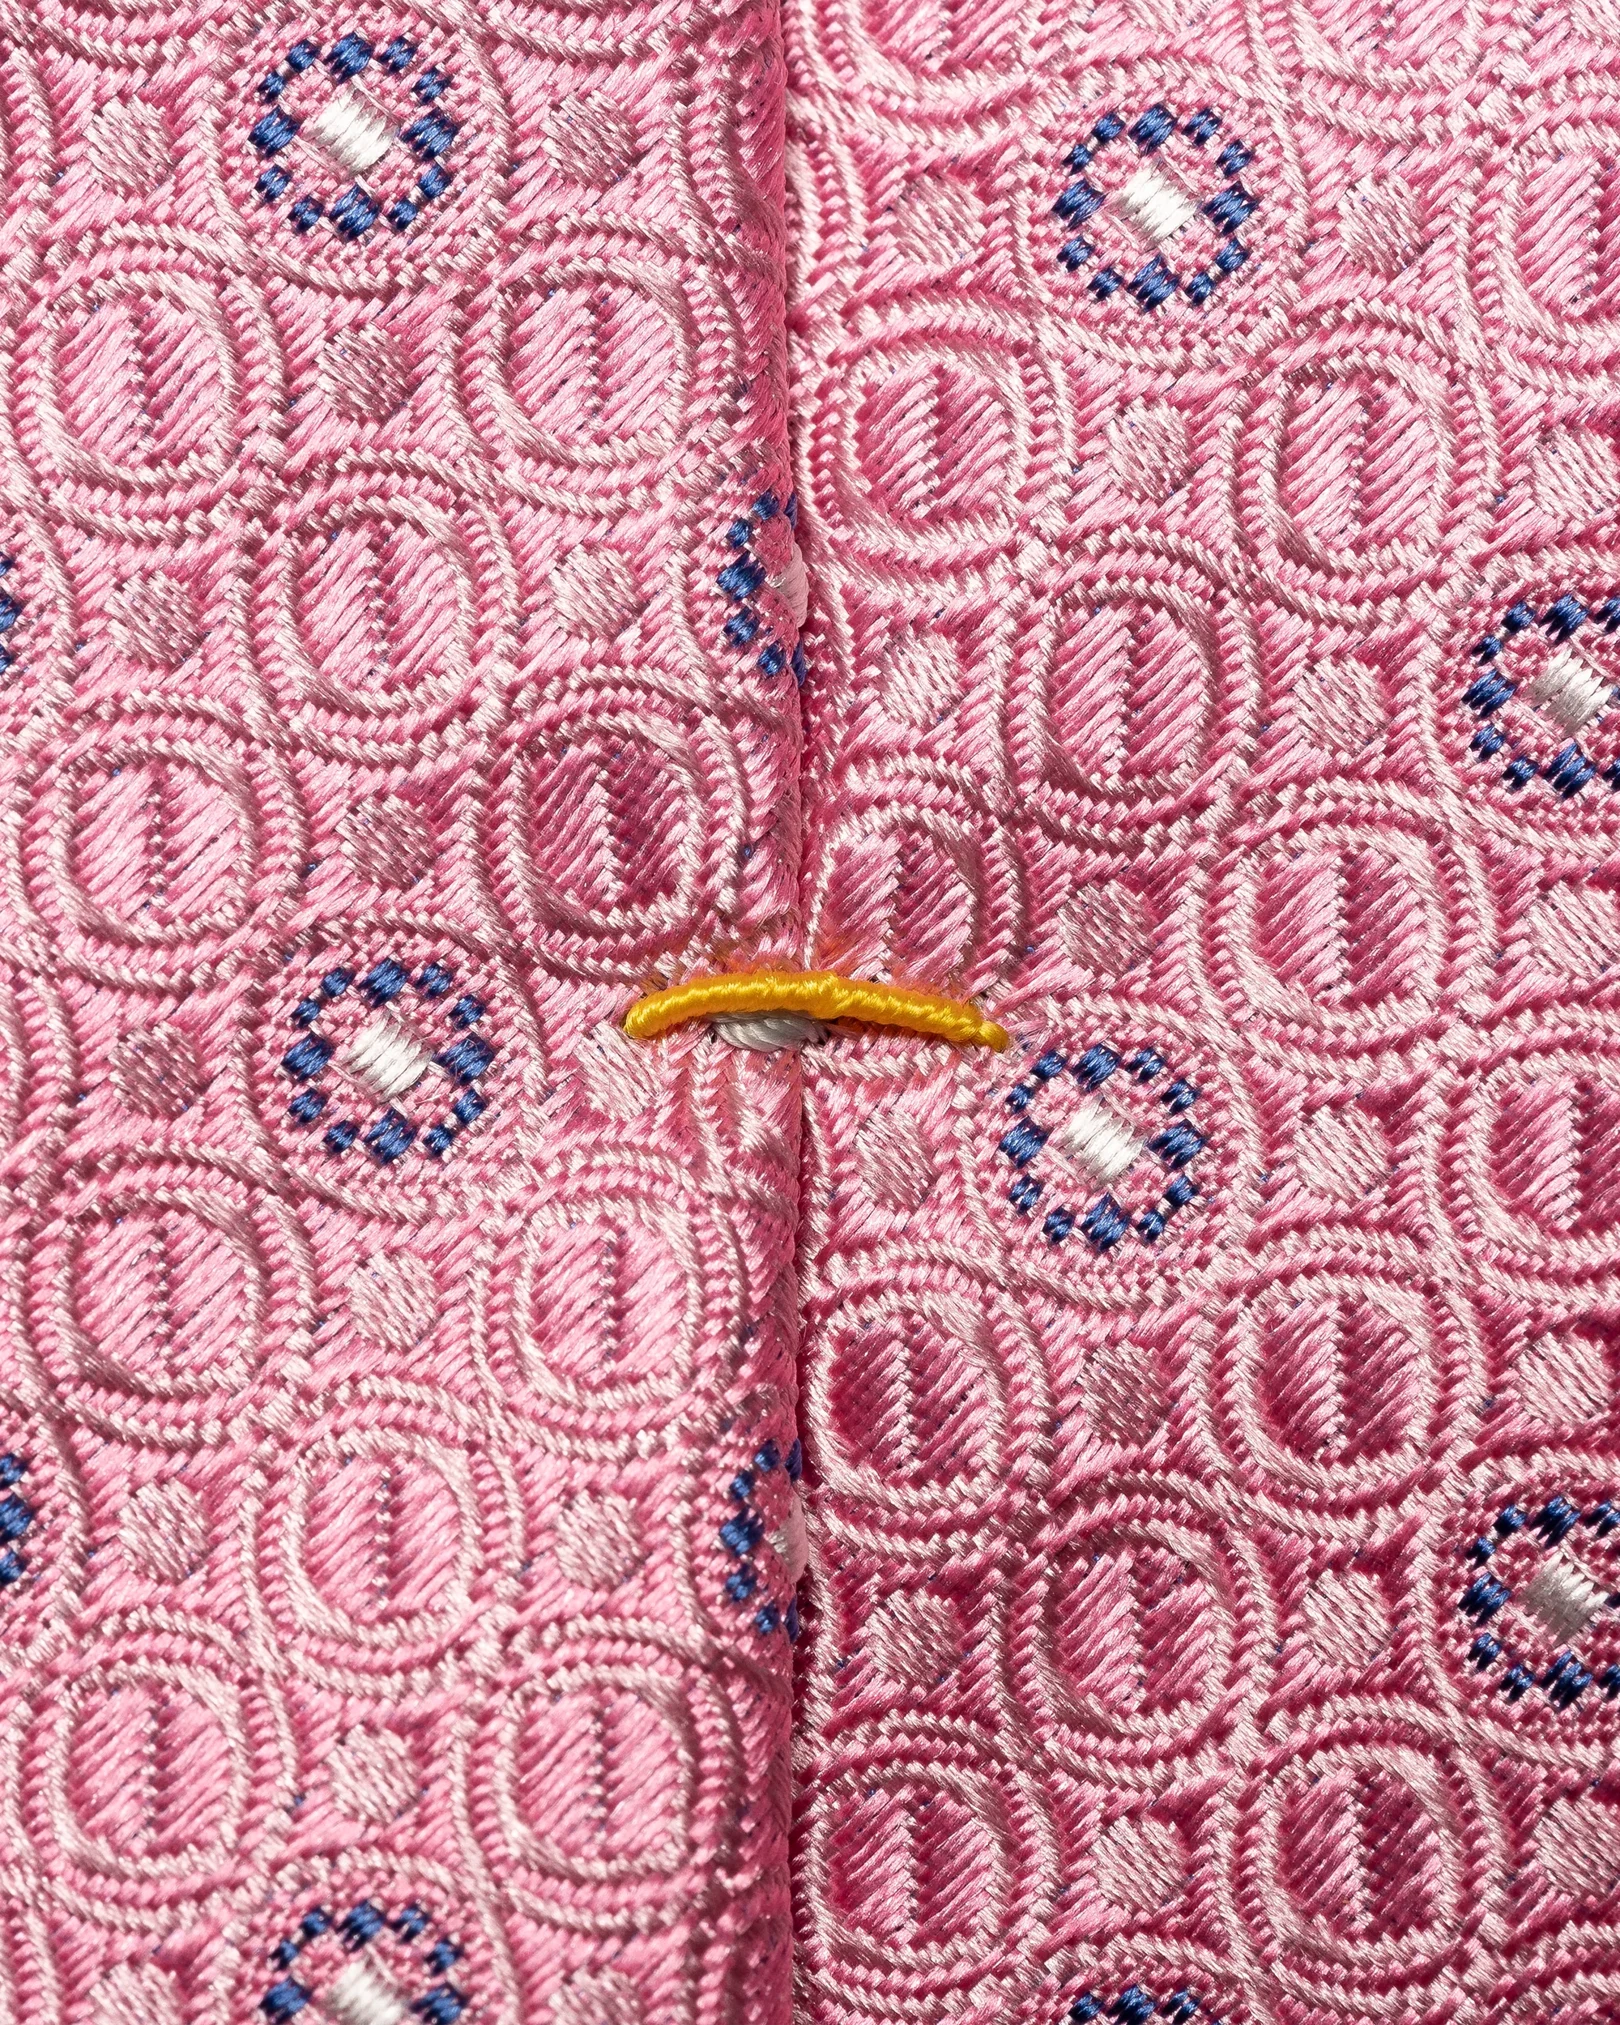 Eton - Floral Print Silk Tie